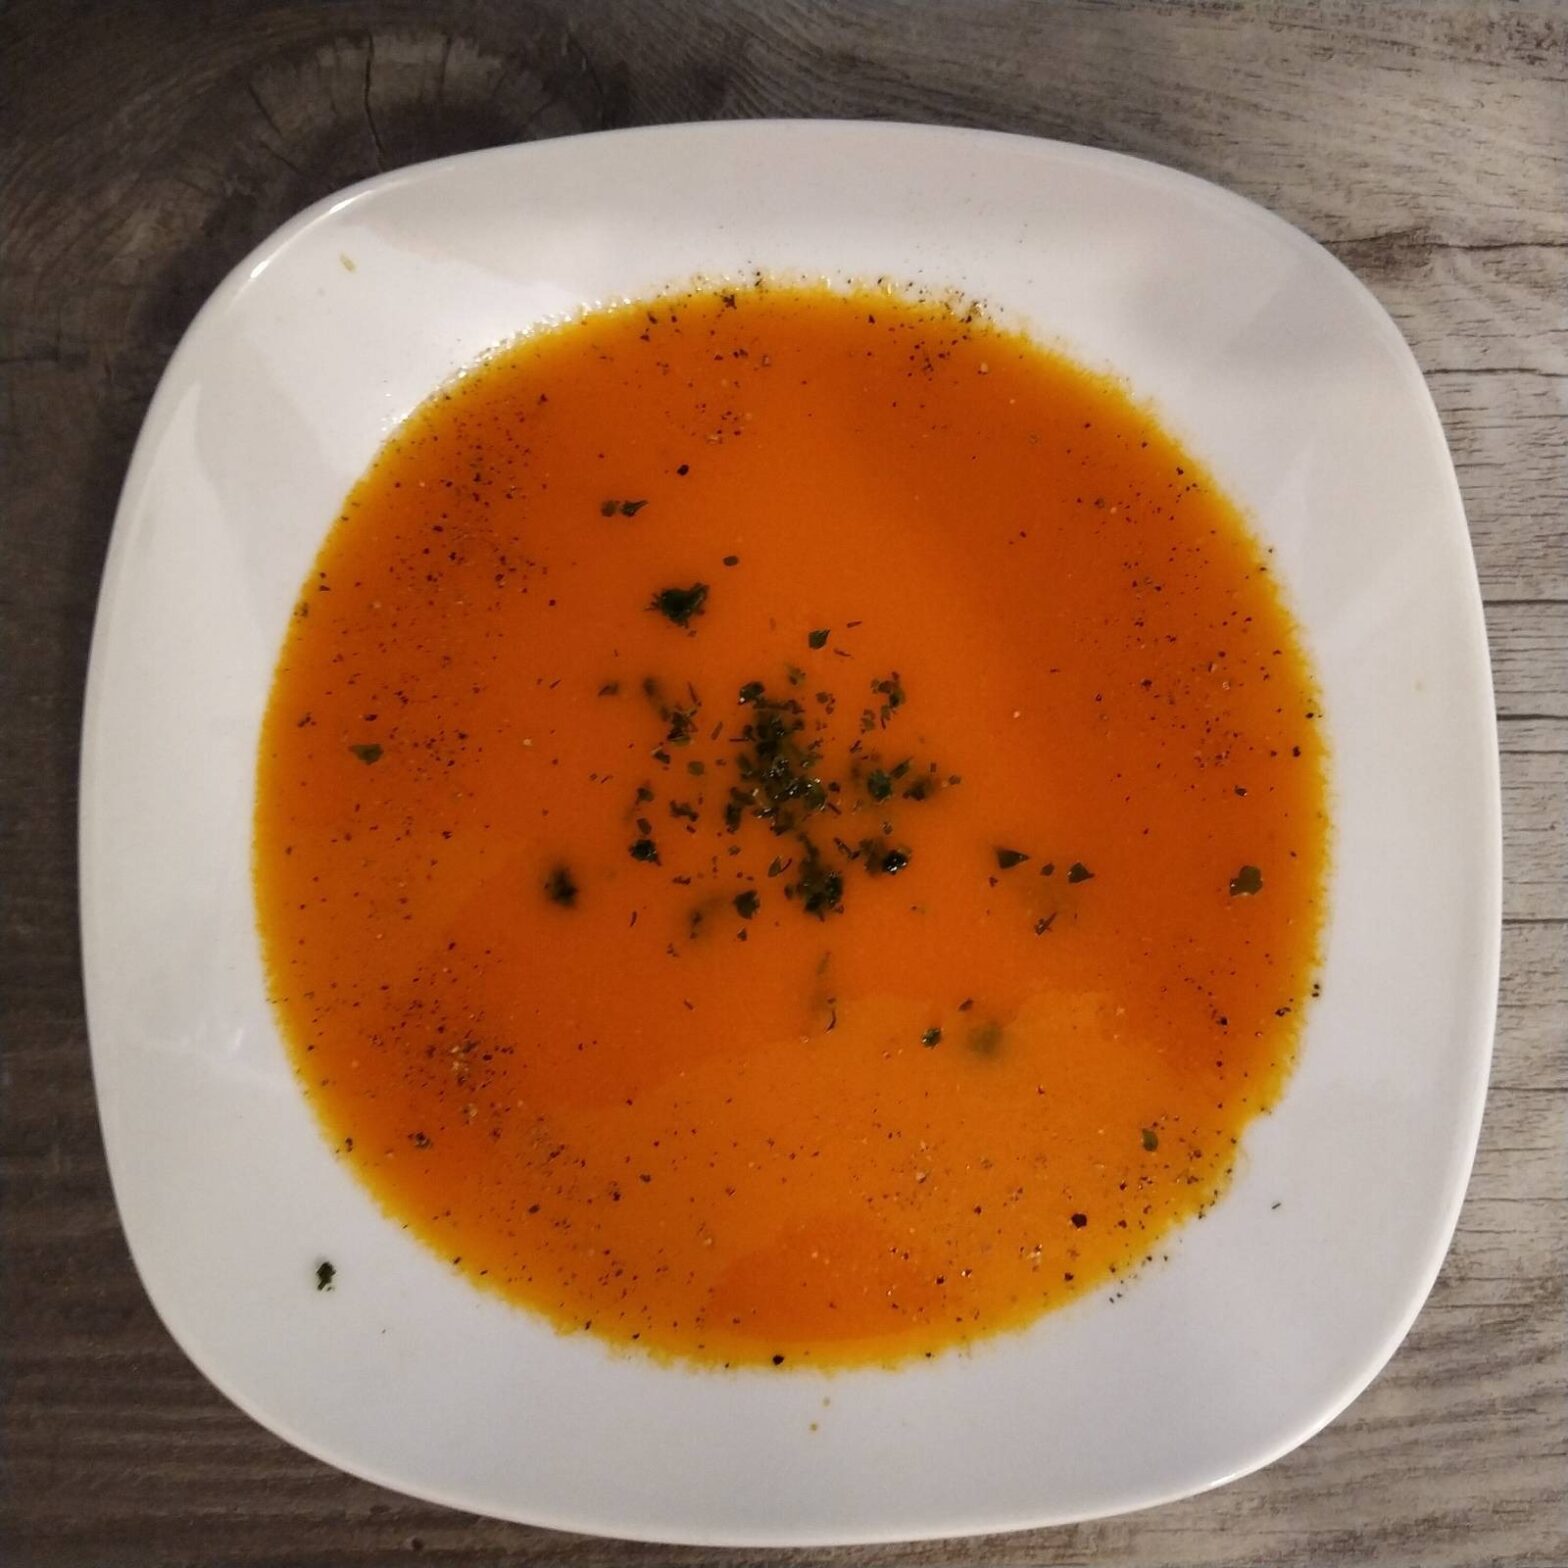 Gach und Guad – Hol den Sommer auf den Teller, kalte Suppen – August